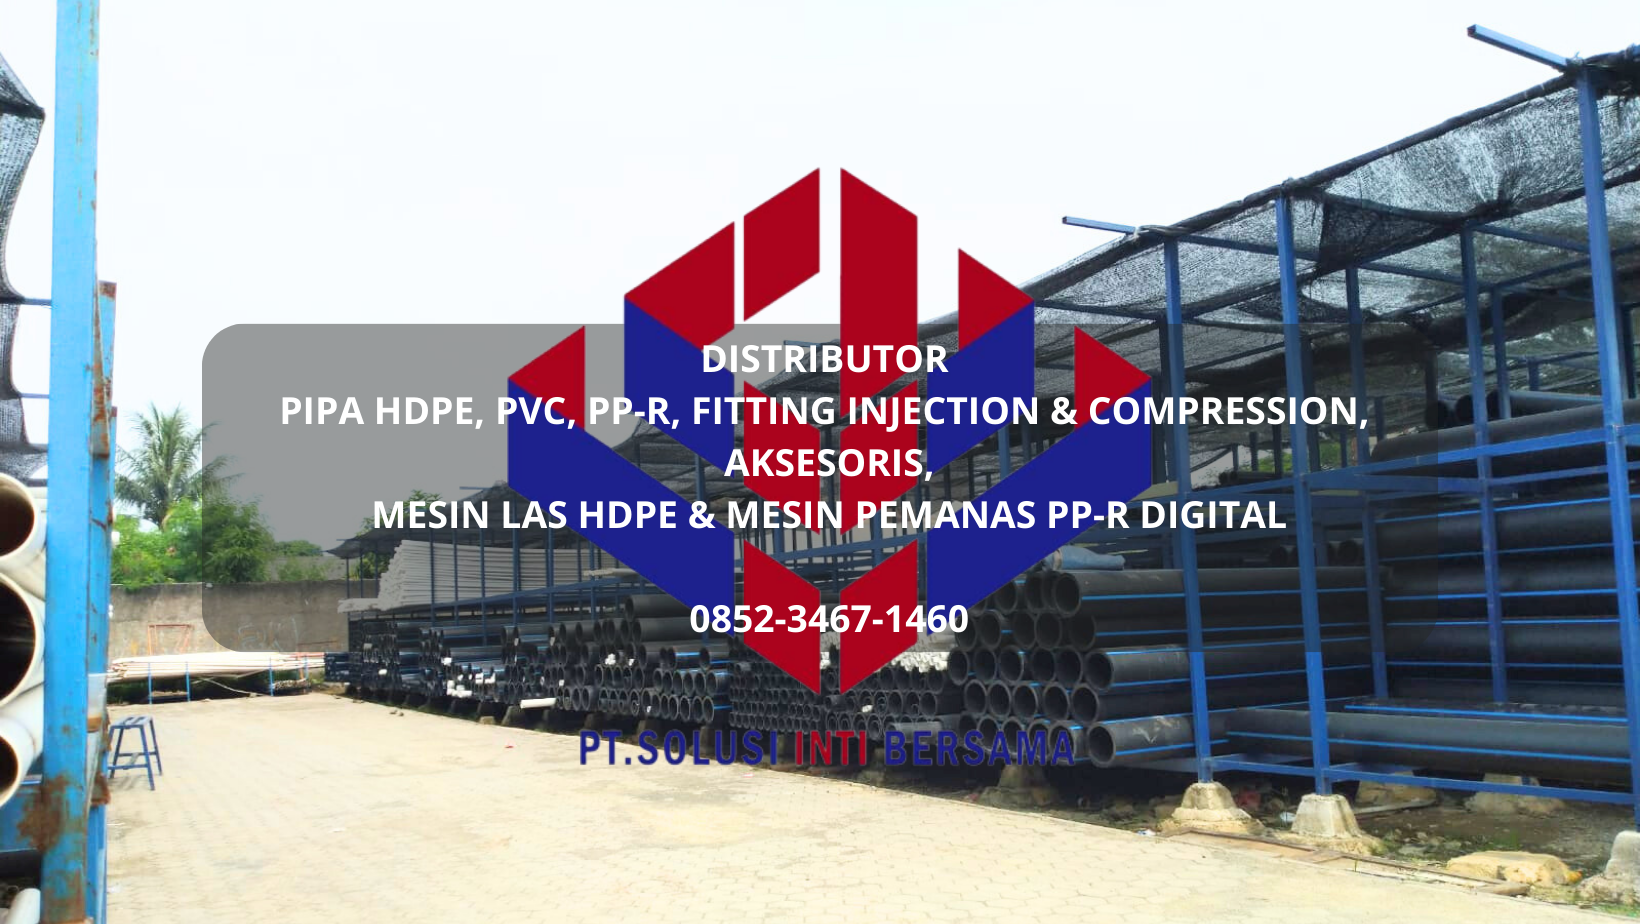 Distributor Jual Pipa HDPE, PVC, PPR, Fitting, Aksesoris, Mesin Las HDPE, Mesin PPR Digital.